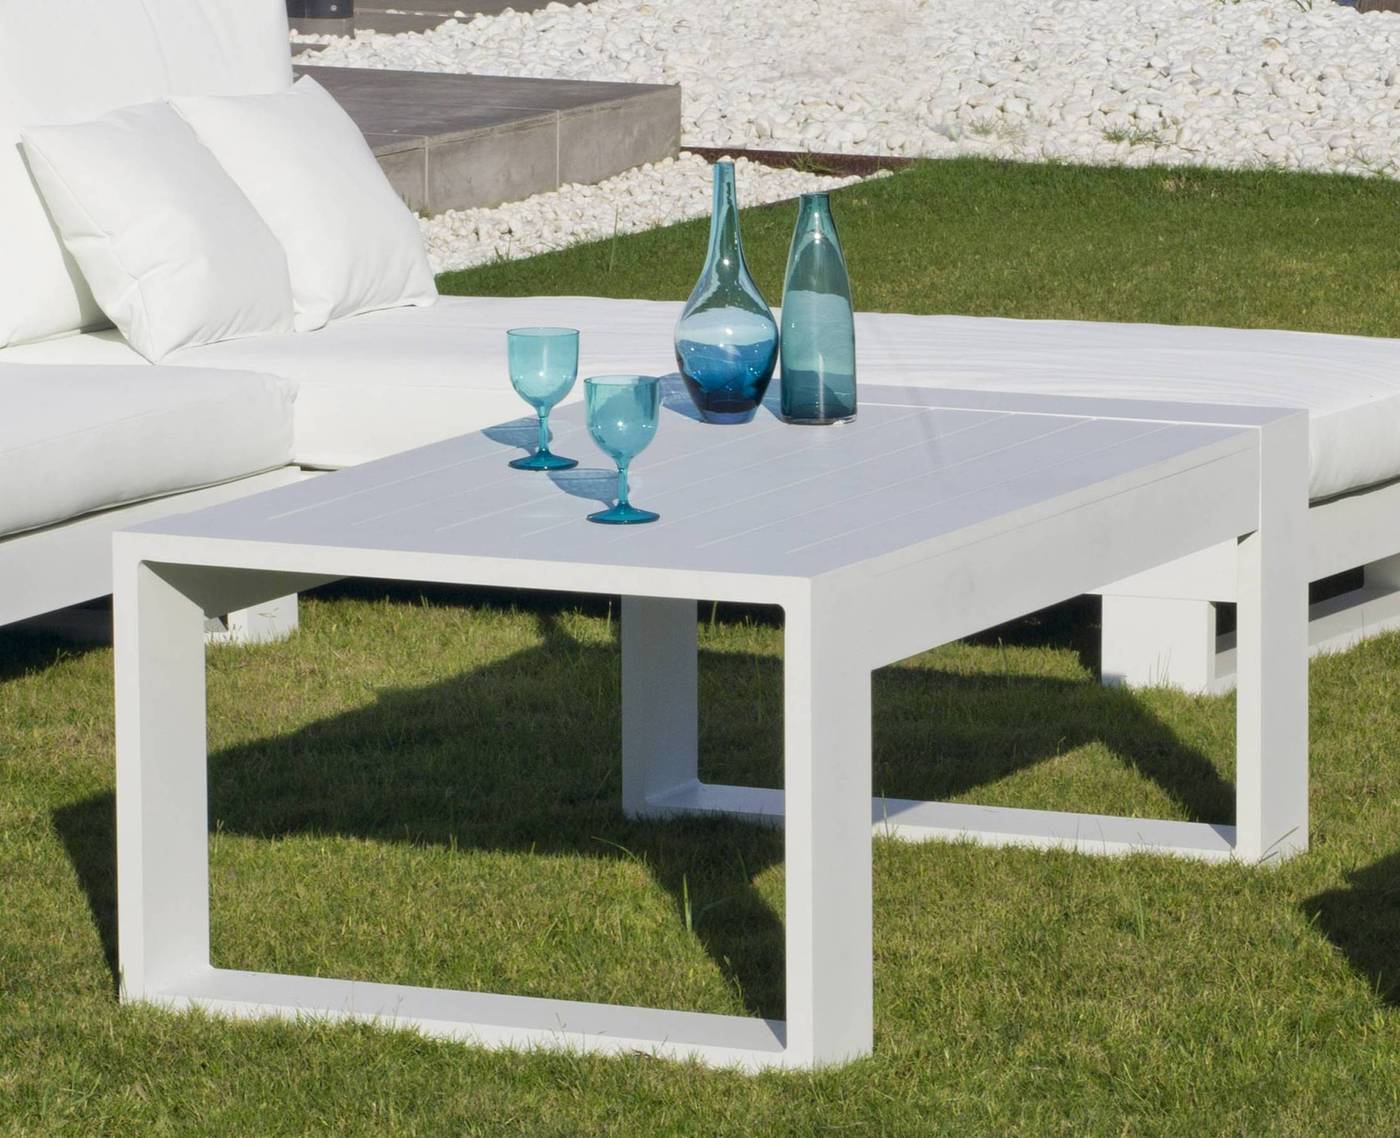 Set Aluminio Luxe Cartago-10 - Conjunto lujoso y robusto de aluminio: 1 sofá de 3 plazas + 2 sillones + 2 reposapiés + 1 mesa de centro. Disponible en color blanco, antracita, champagne, plata o marrón.